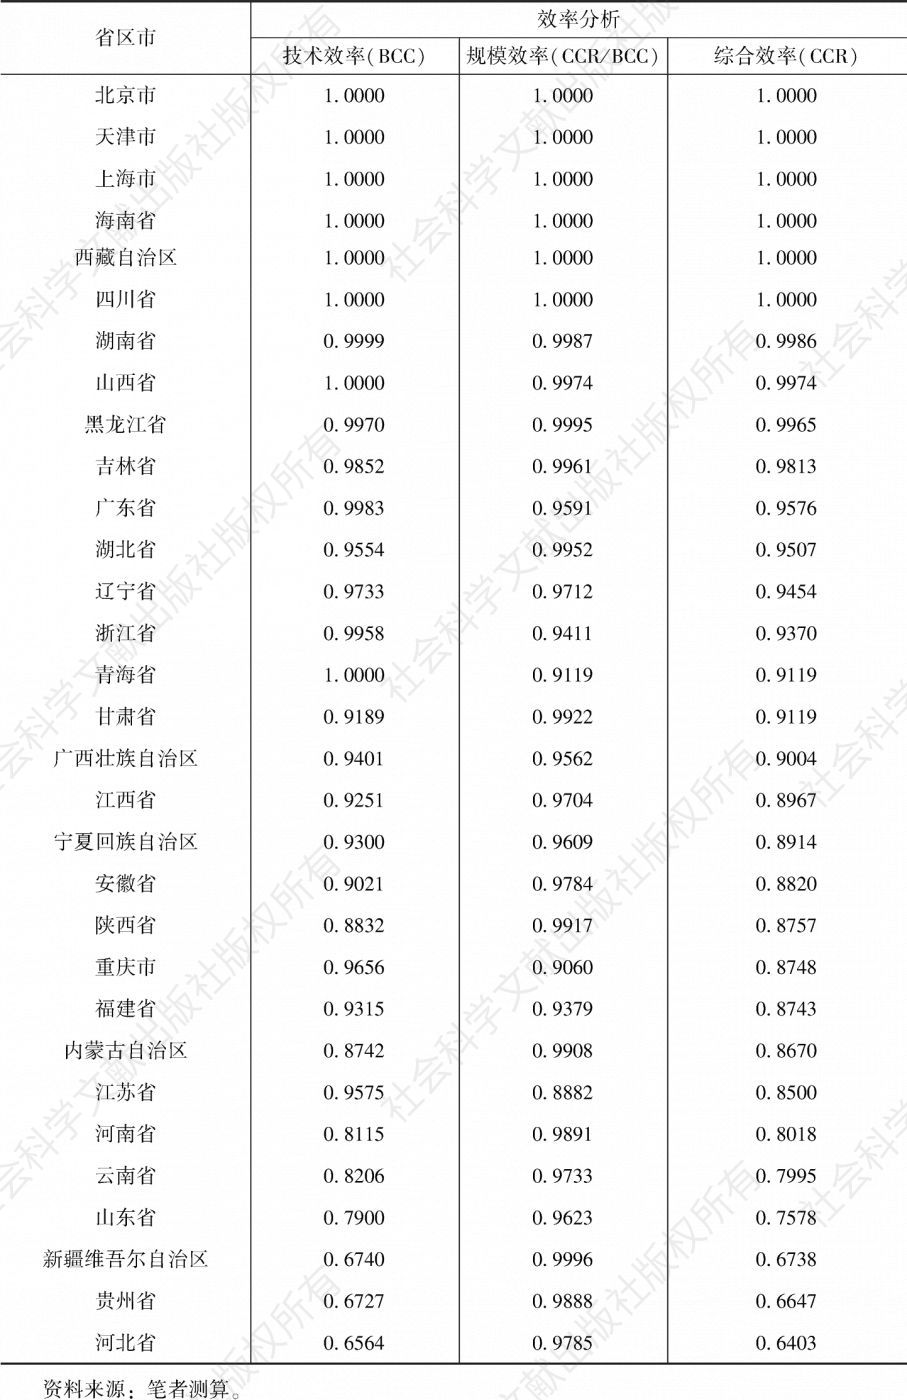 表8 2019年中国省级行政区能源利用效率分析指标对比